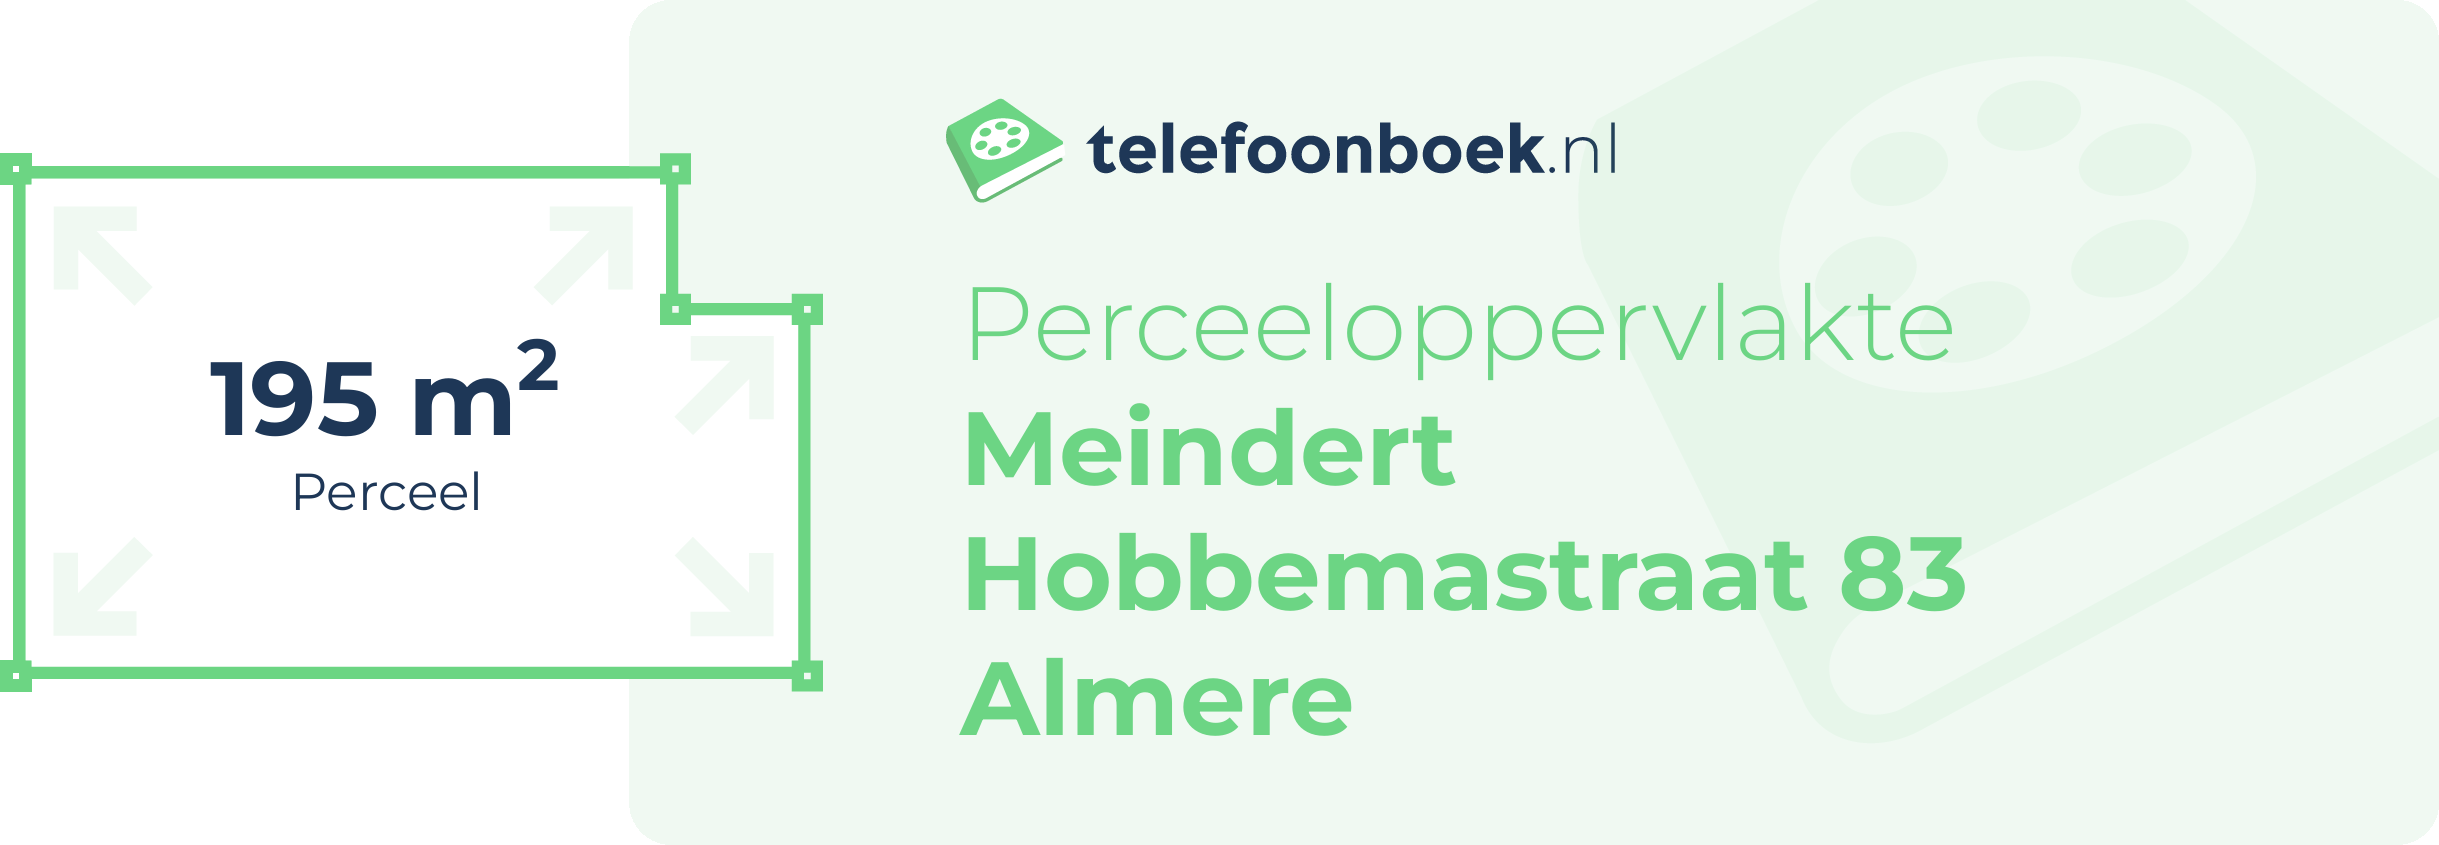 Perceeloppervlakte Meindert Hobbemastraat 83 Almere